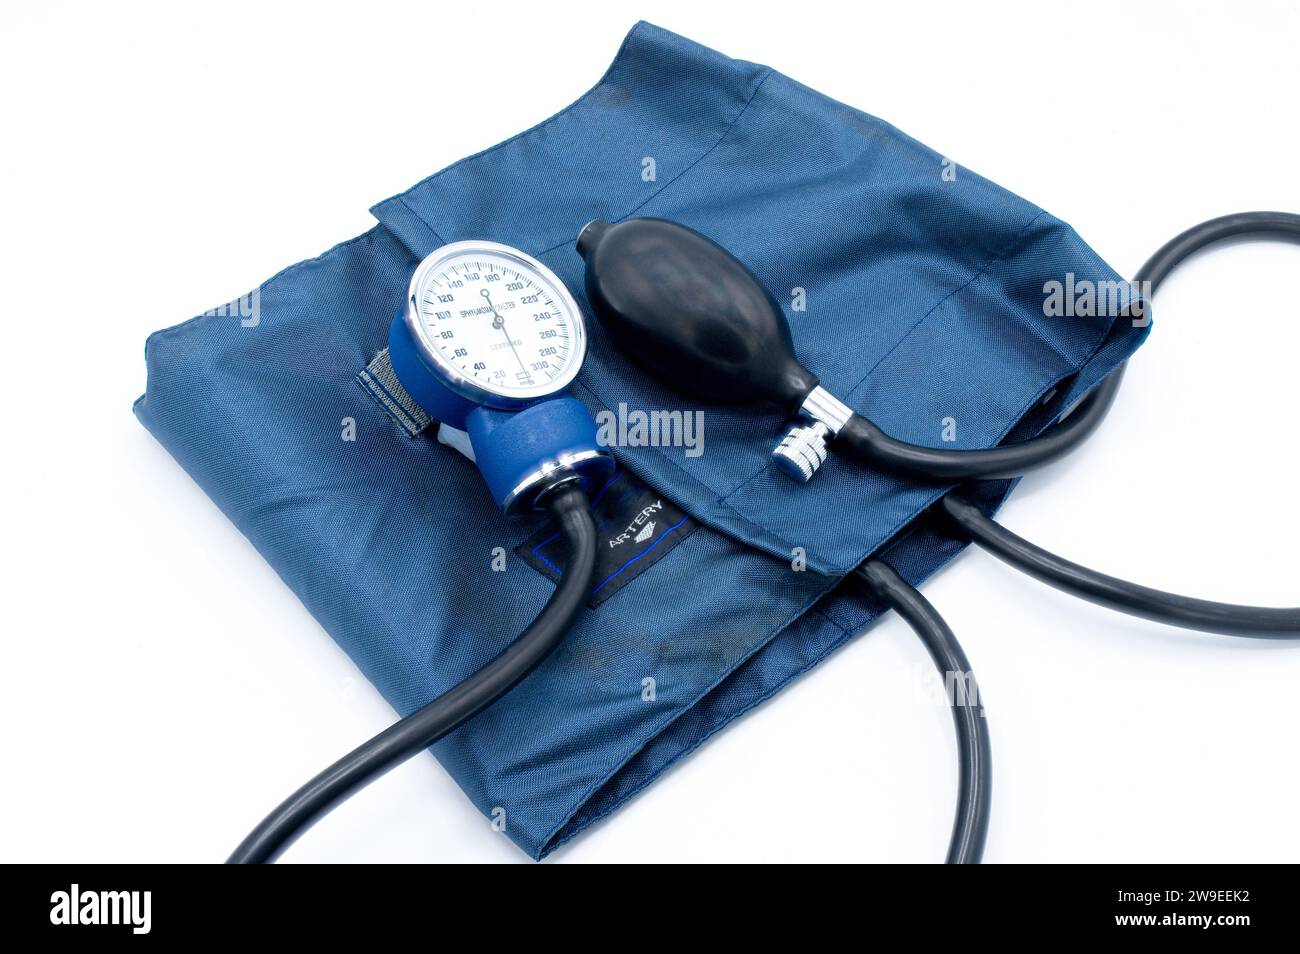 Sphygmomanometer ein Medizinprodukt zur arteriellen Blutdruckmessung. Es besteht aus einer aufblasbaren Gummimanschette, die um das obere A gewickelt ist Stockfoto